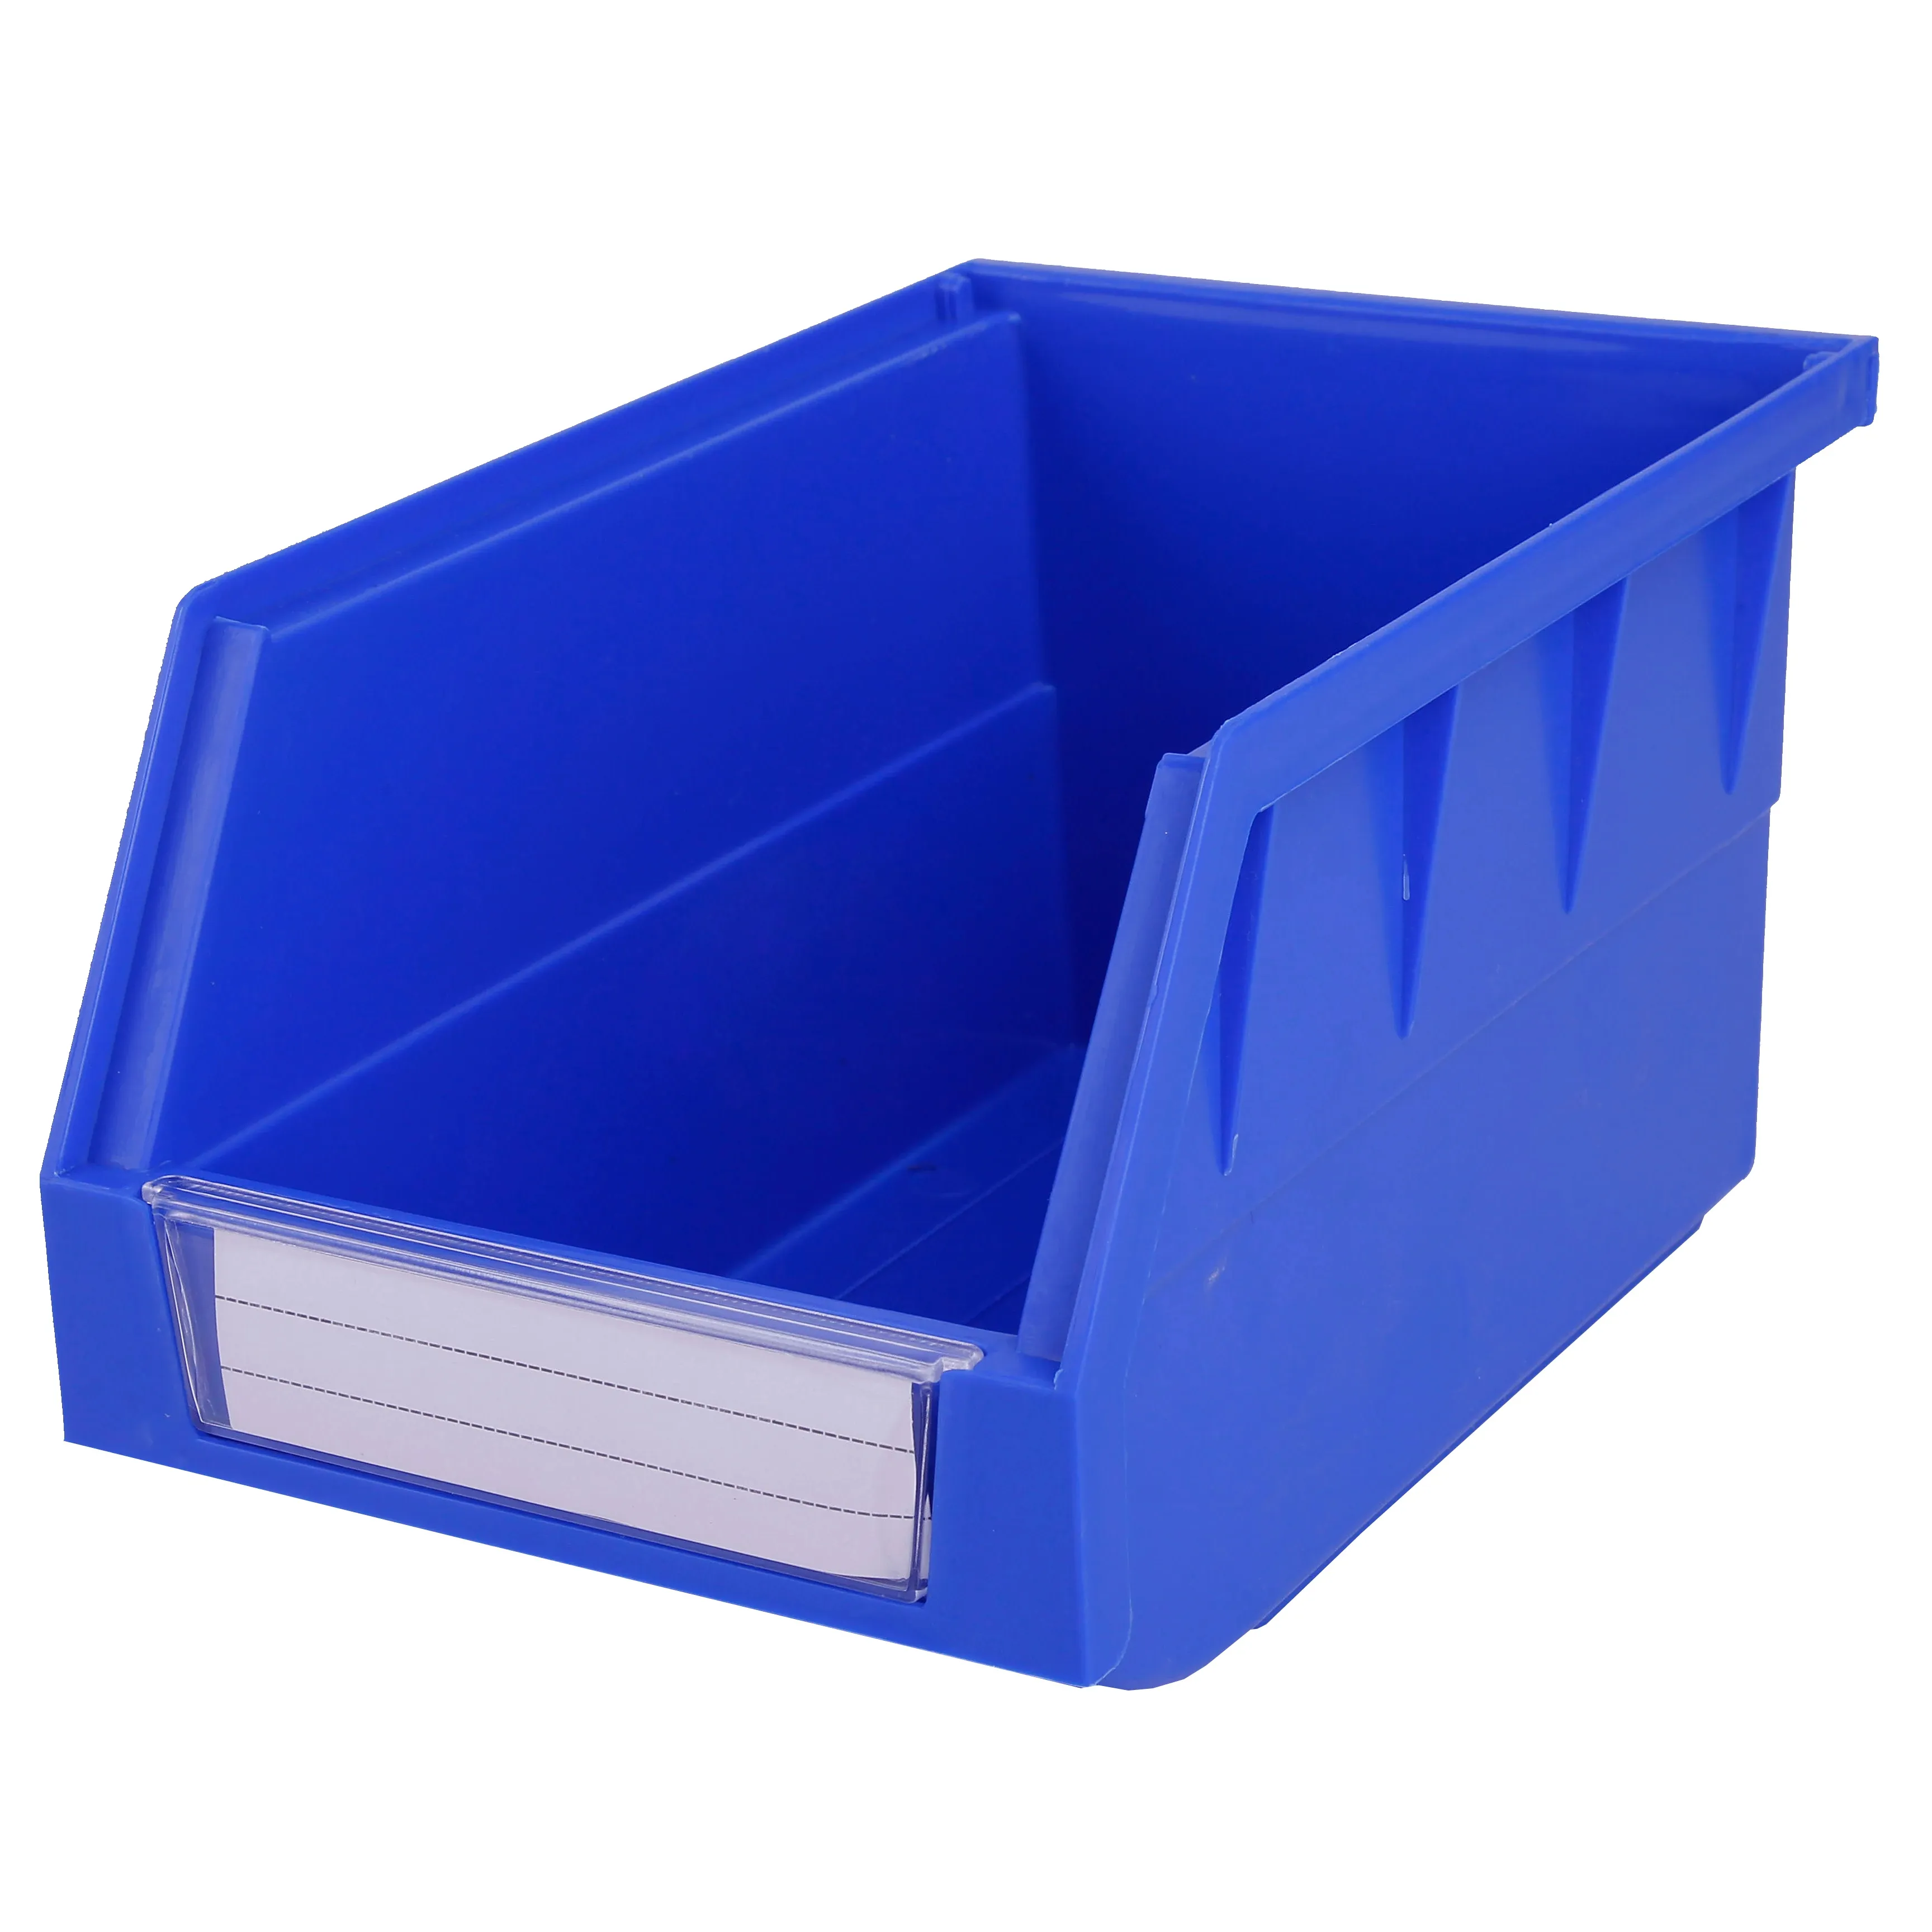 Caixa de plástico para oficina, recipiente empilhável de plástico para parafusos, recipiente de plástico para abertura